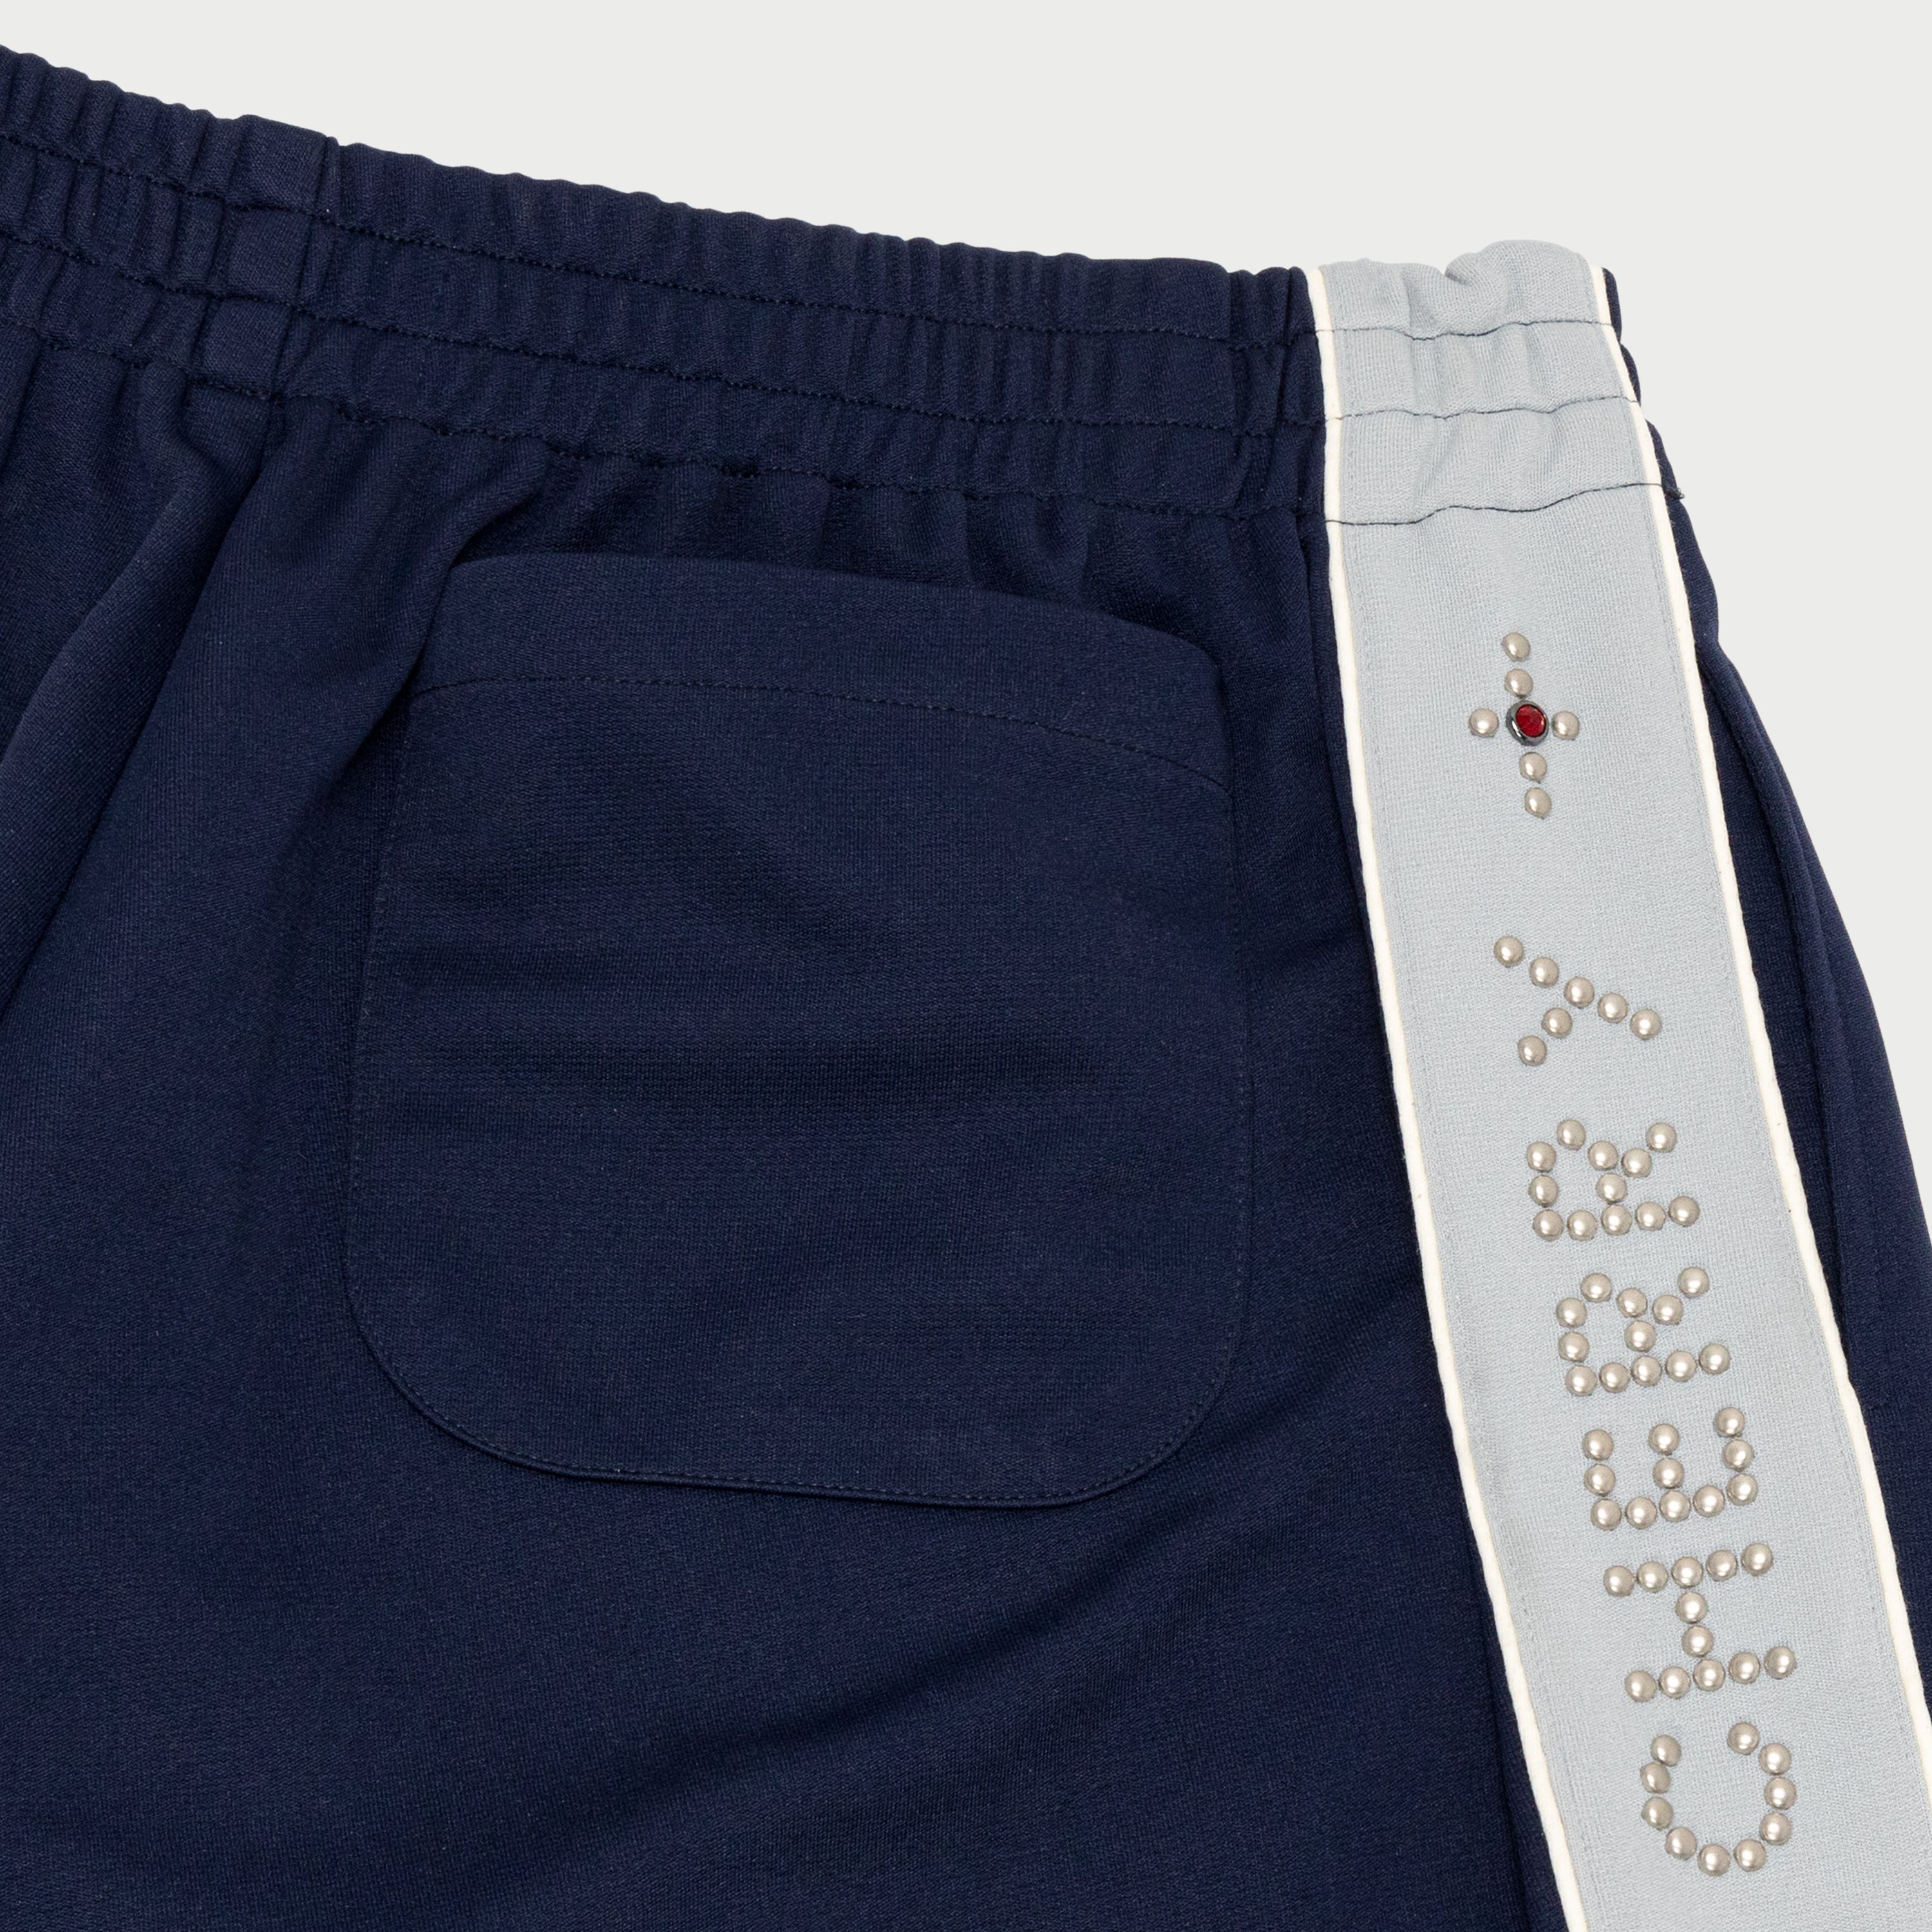 Studded Shorts (Navy)